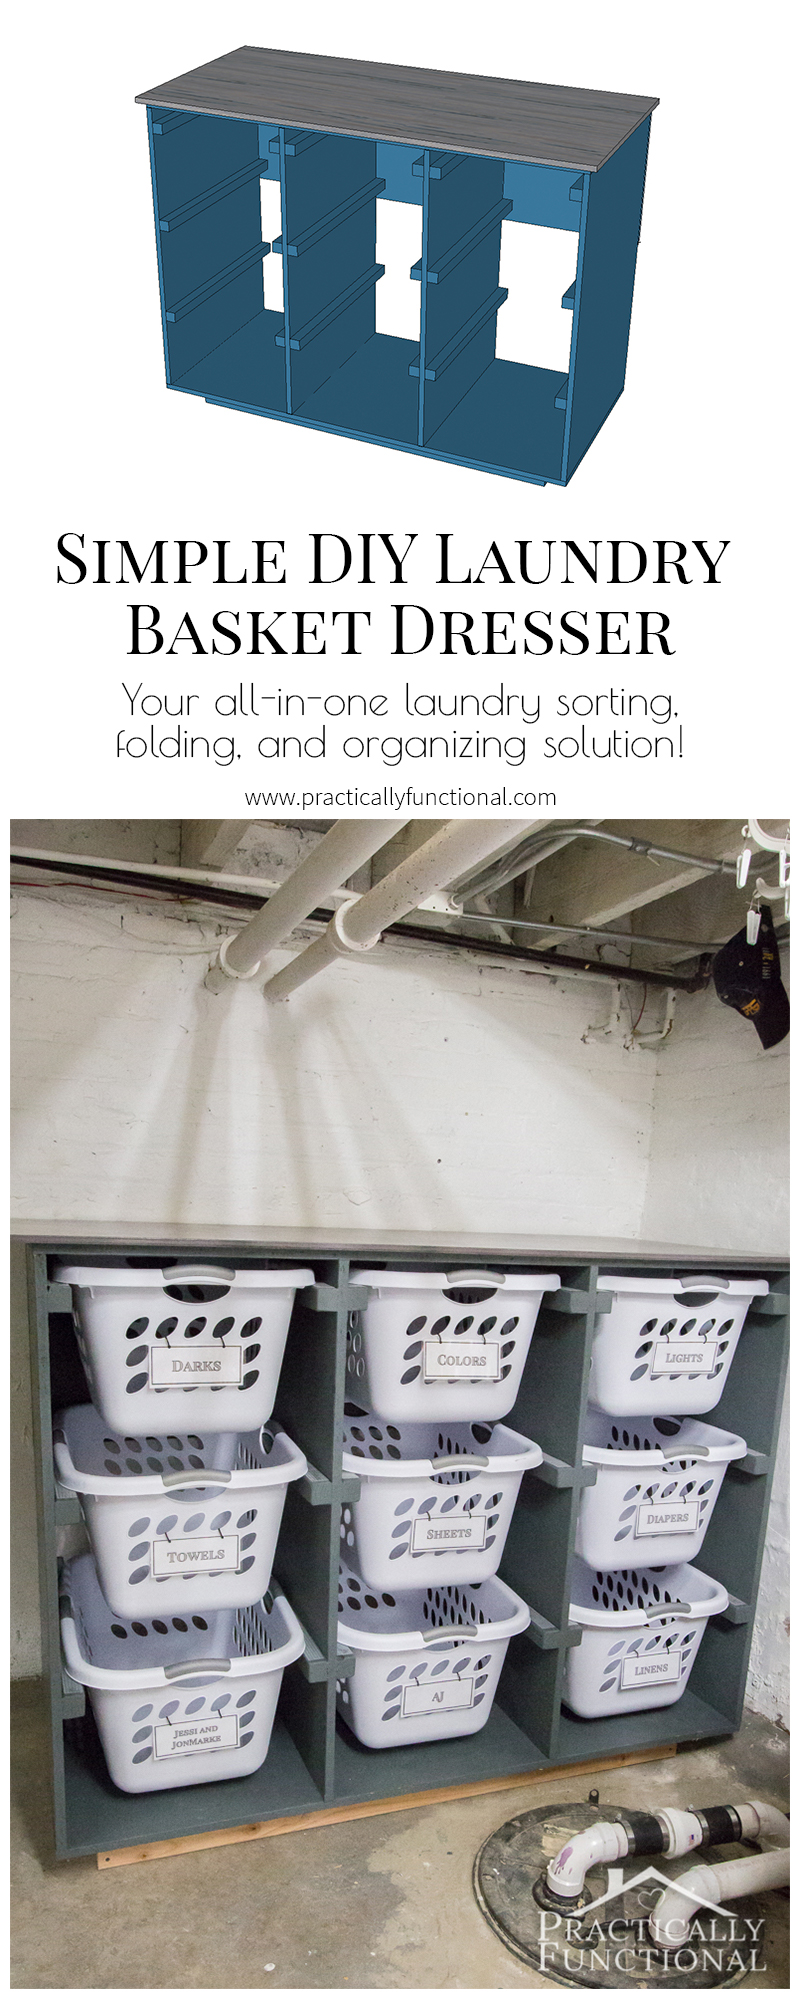 Build a Basket Storage Cabinet - Build Basic